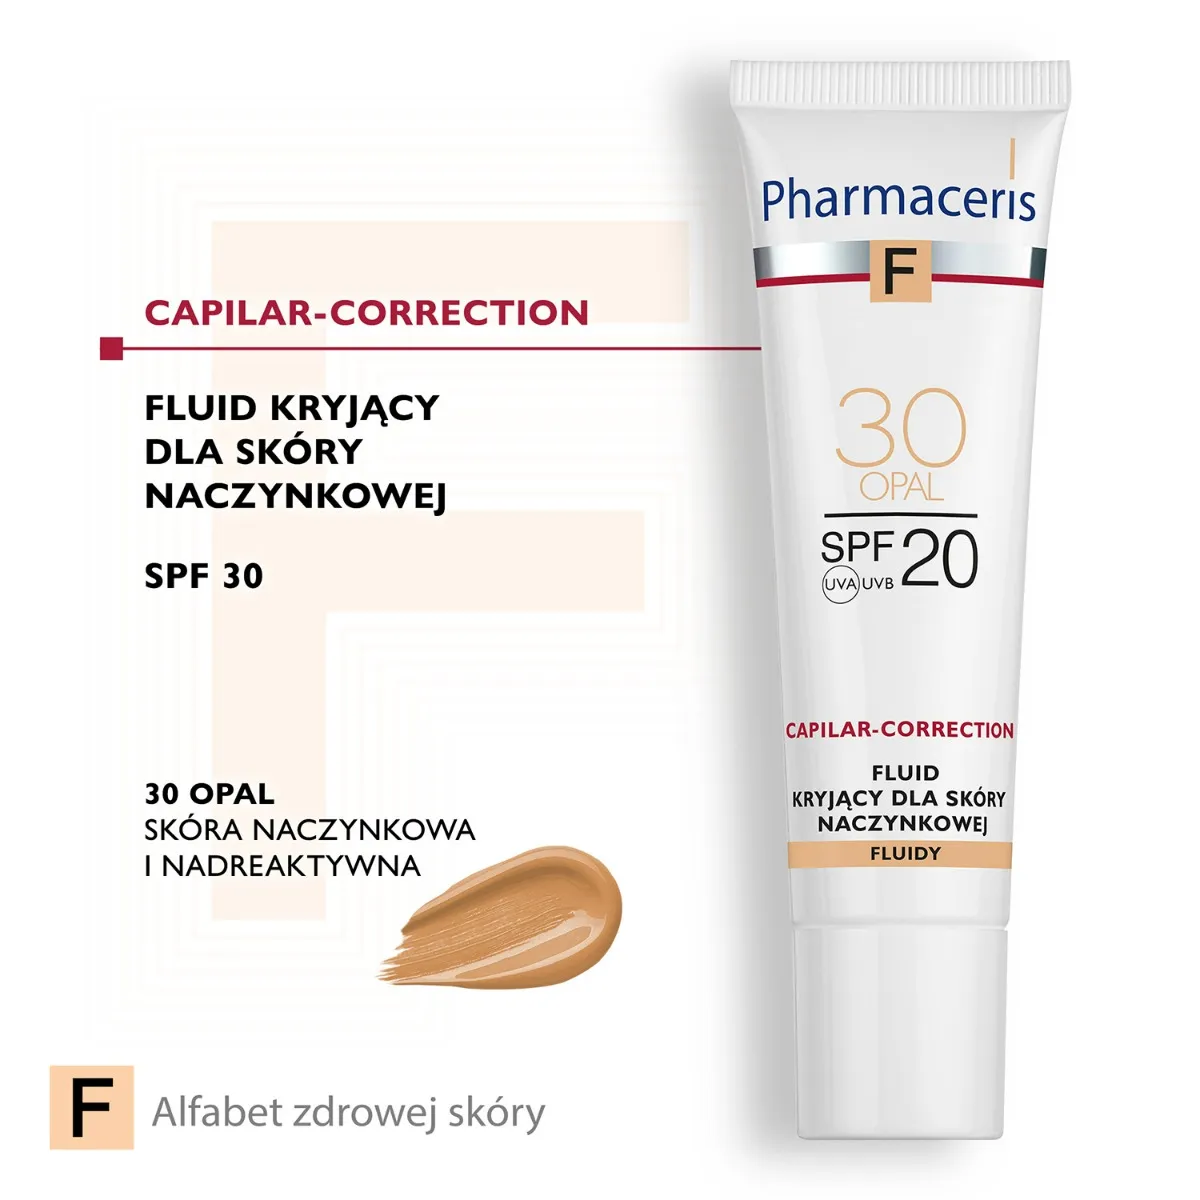 Pharmaceris F Capilar-Correction, fluid kryjący do skóry naczynkowej 30 Opal SPF 20, 30 ml 